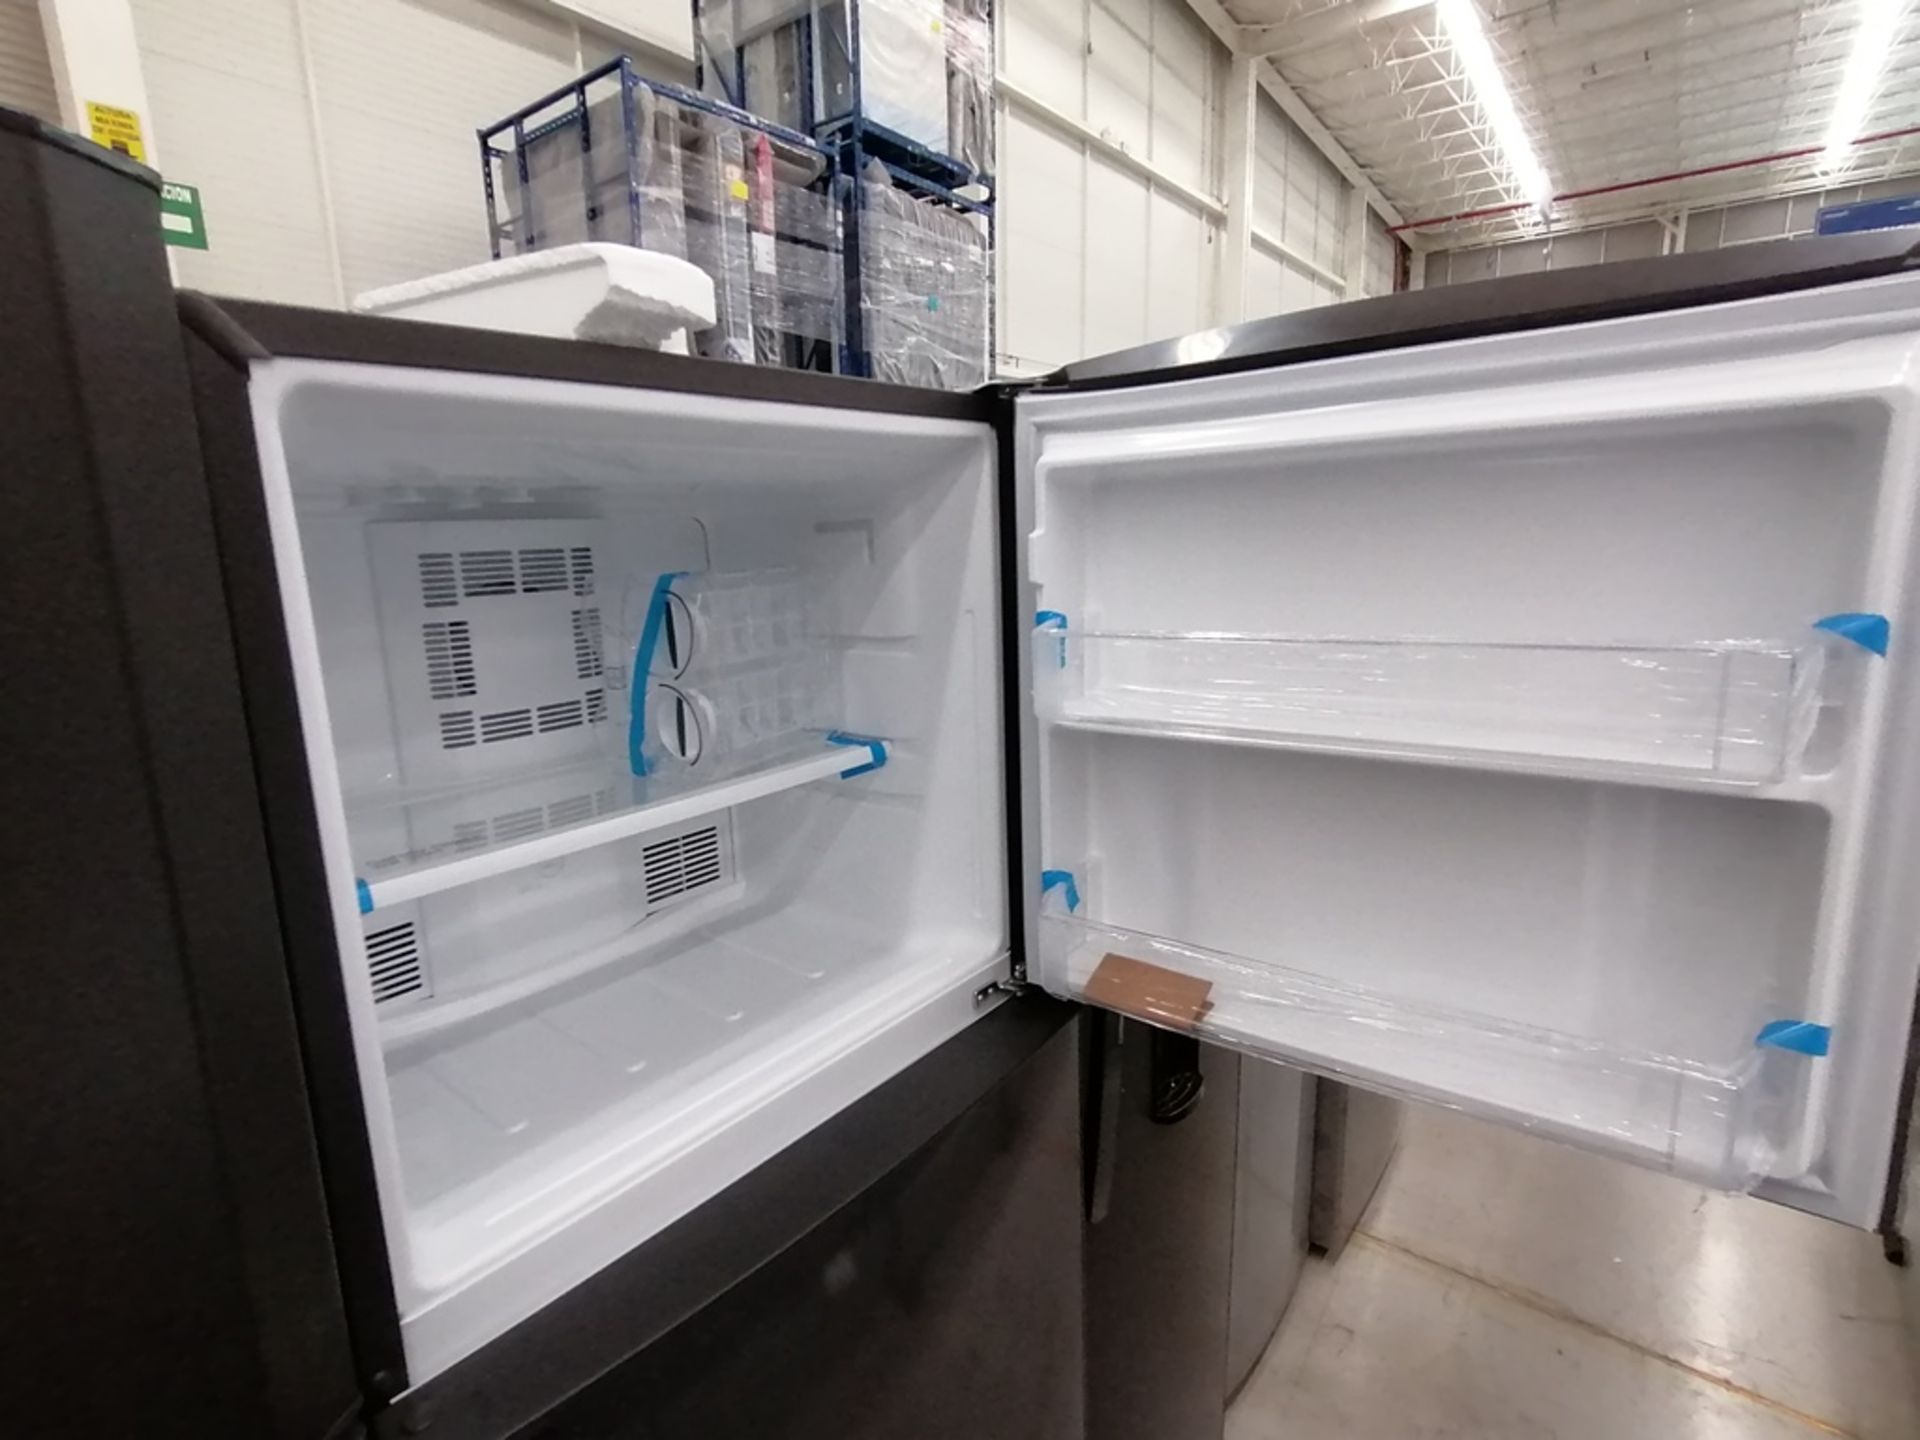 Lote de 2 refrigeradores incluye: 1 Refrigerador con dispensador de agua, Marca Mabe, Modelo RMA300 - Image 13 of 15